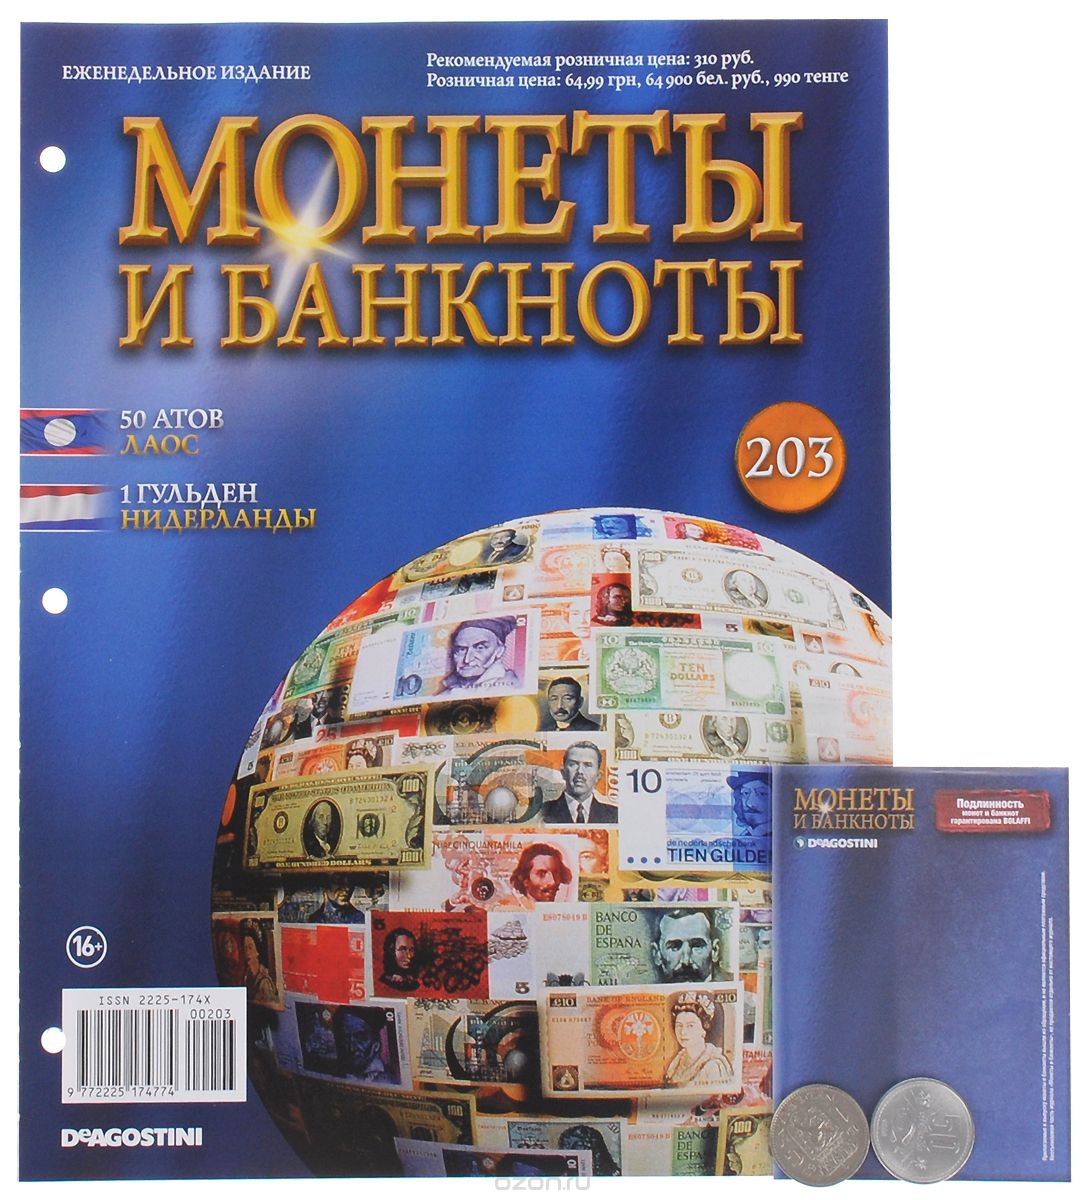 Скачать книгу "Журнал "Монеты и банкноты" №203"